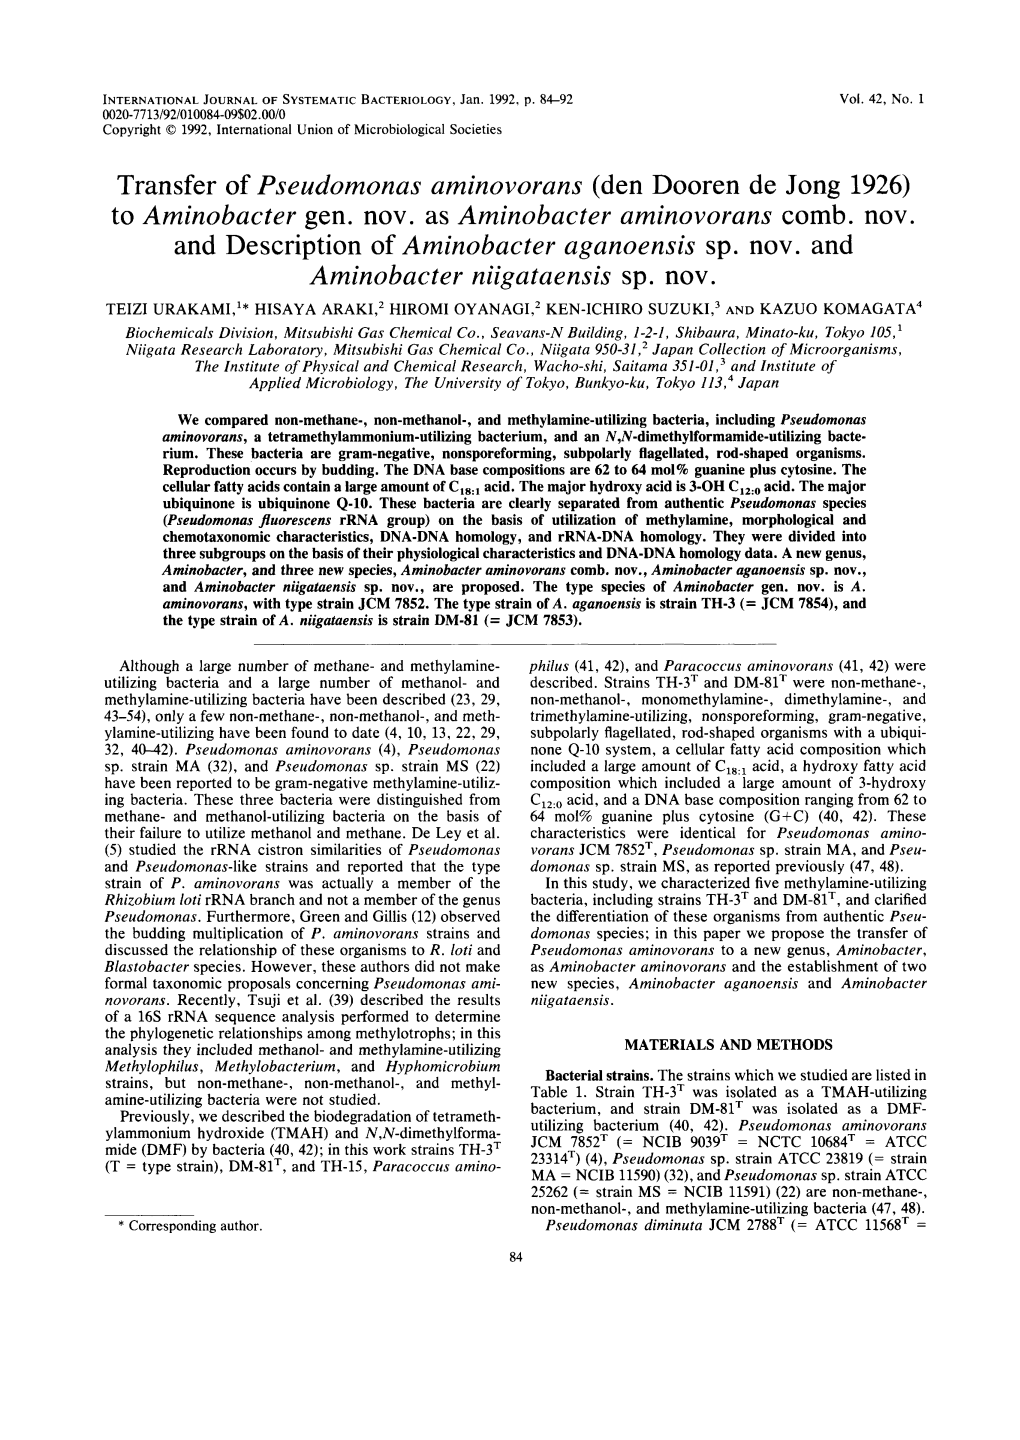 Transfer of Pseudomonas Aminovorans (Den Dooren De Jong 1926) to Aminobacter Gen